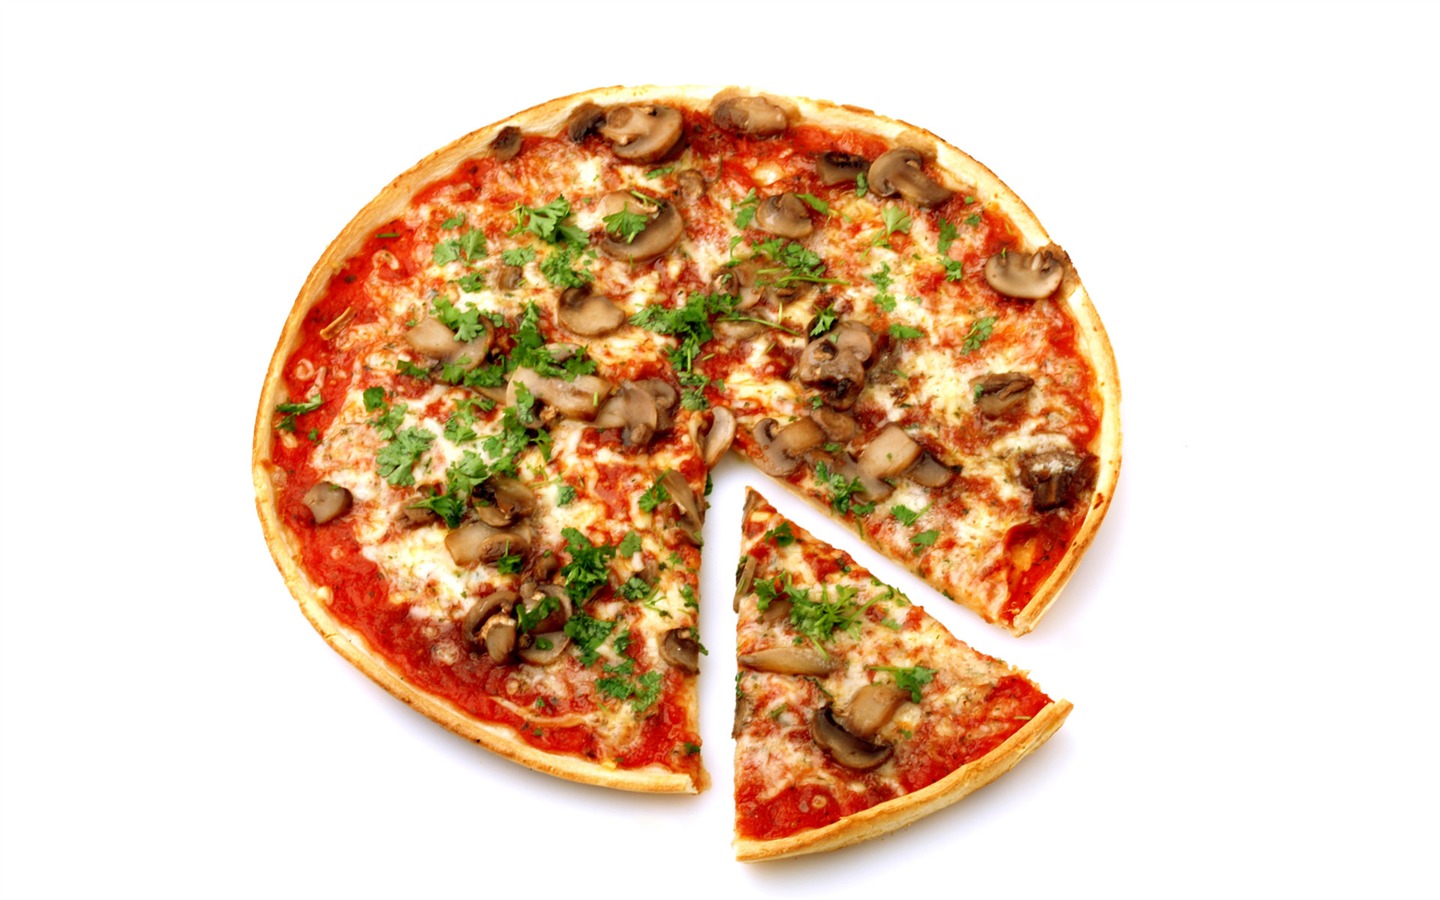 Fondos de pizzerías de Alimentos (4) #2 - 1440x900